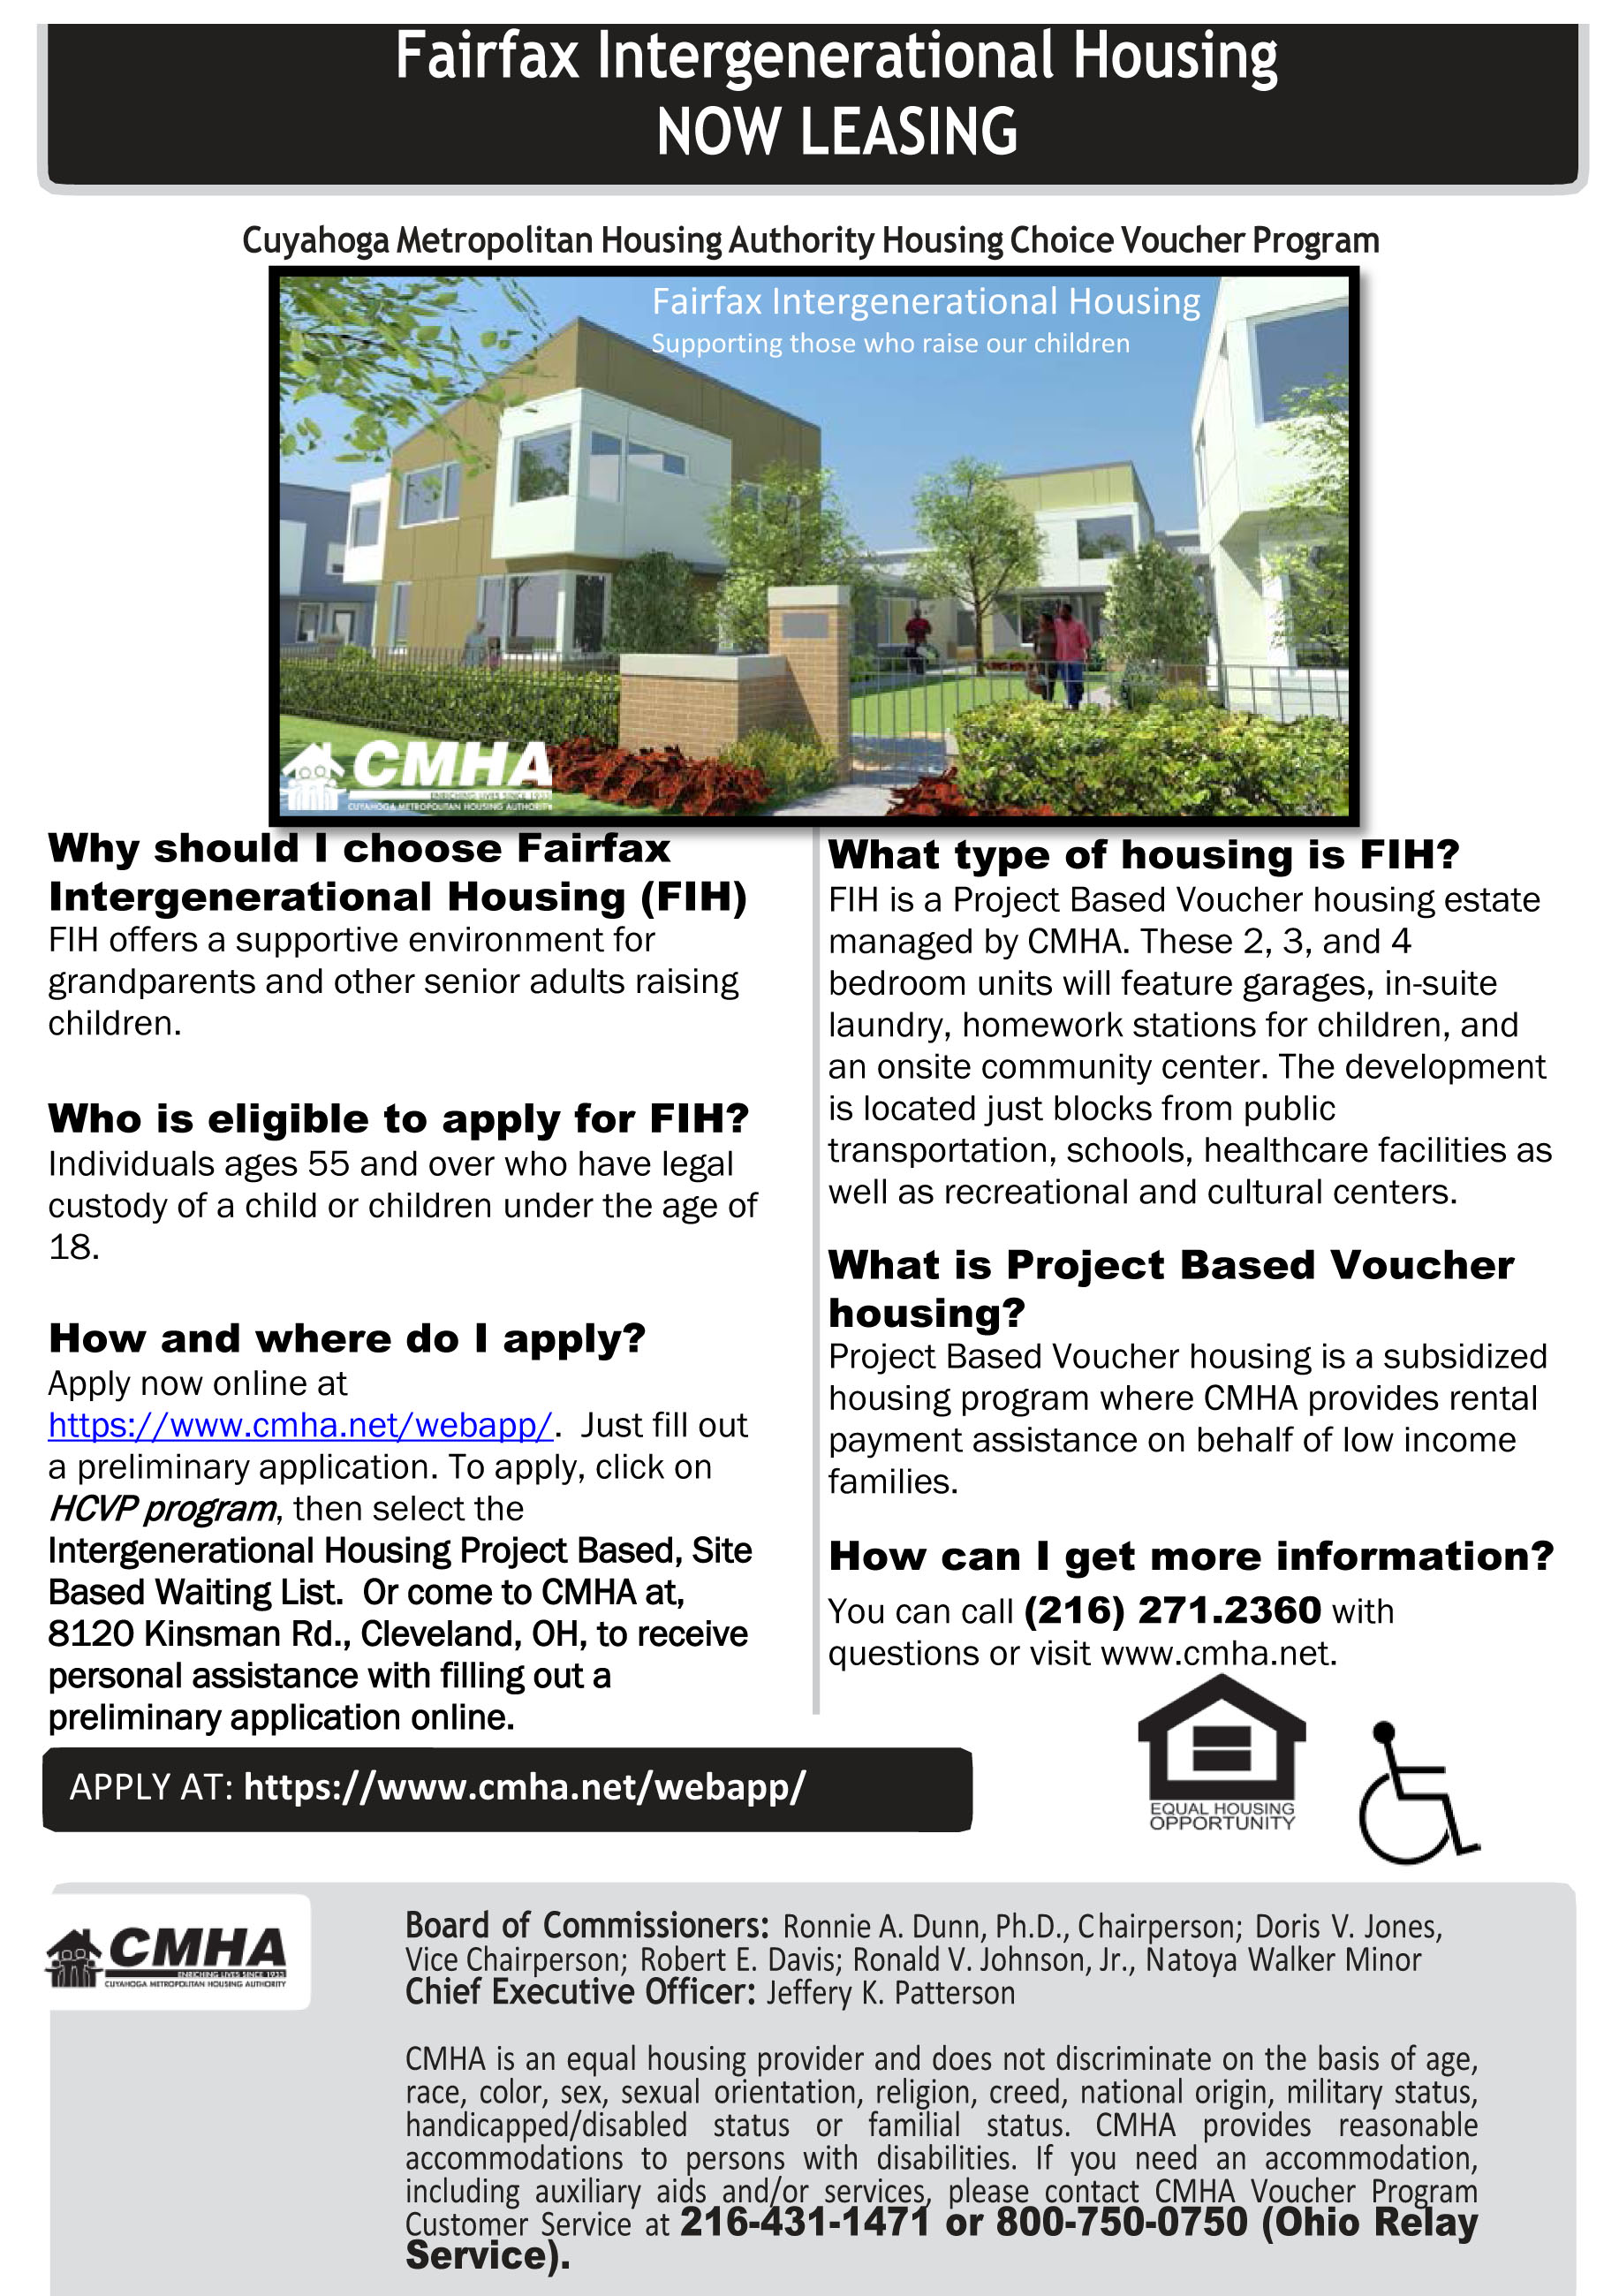 Fairfax Intergenerational Housing